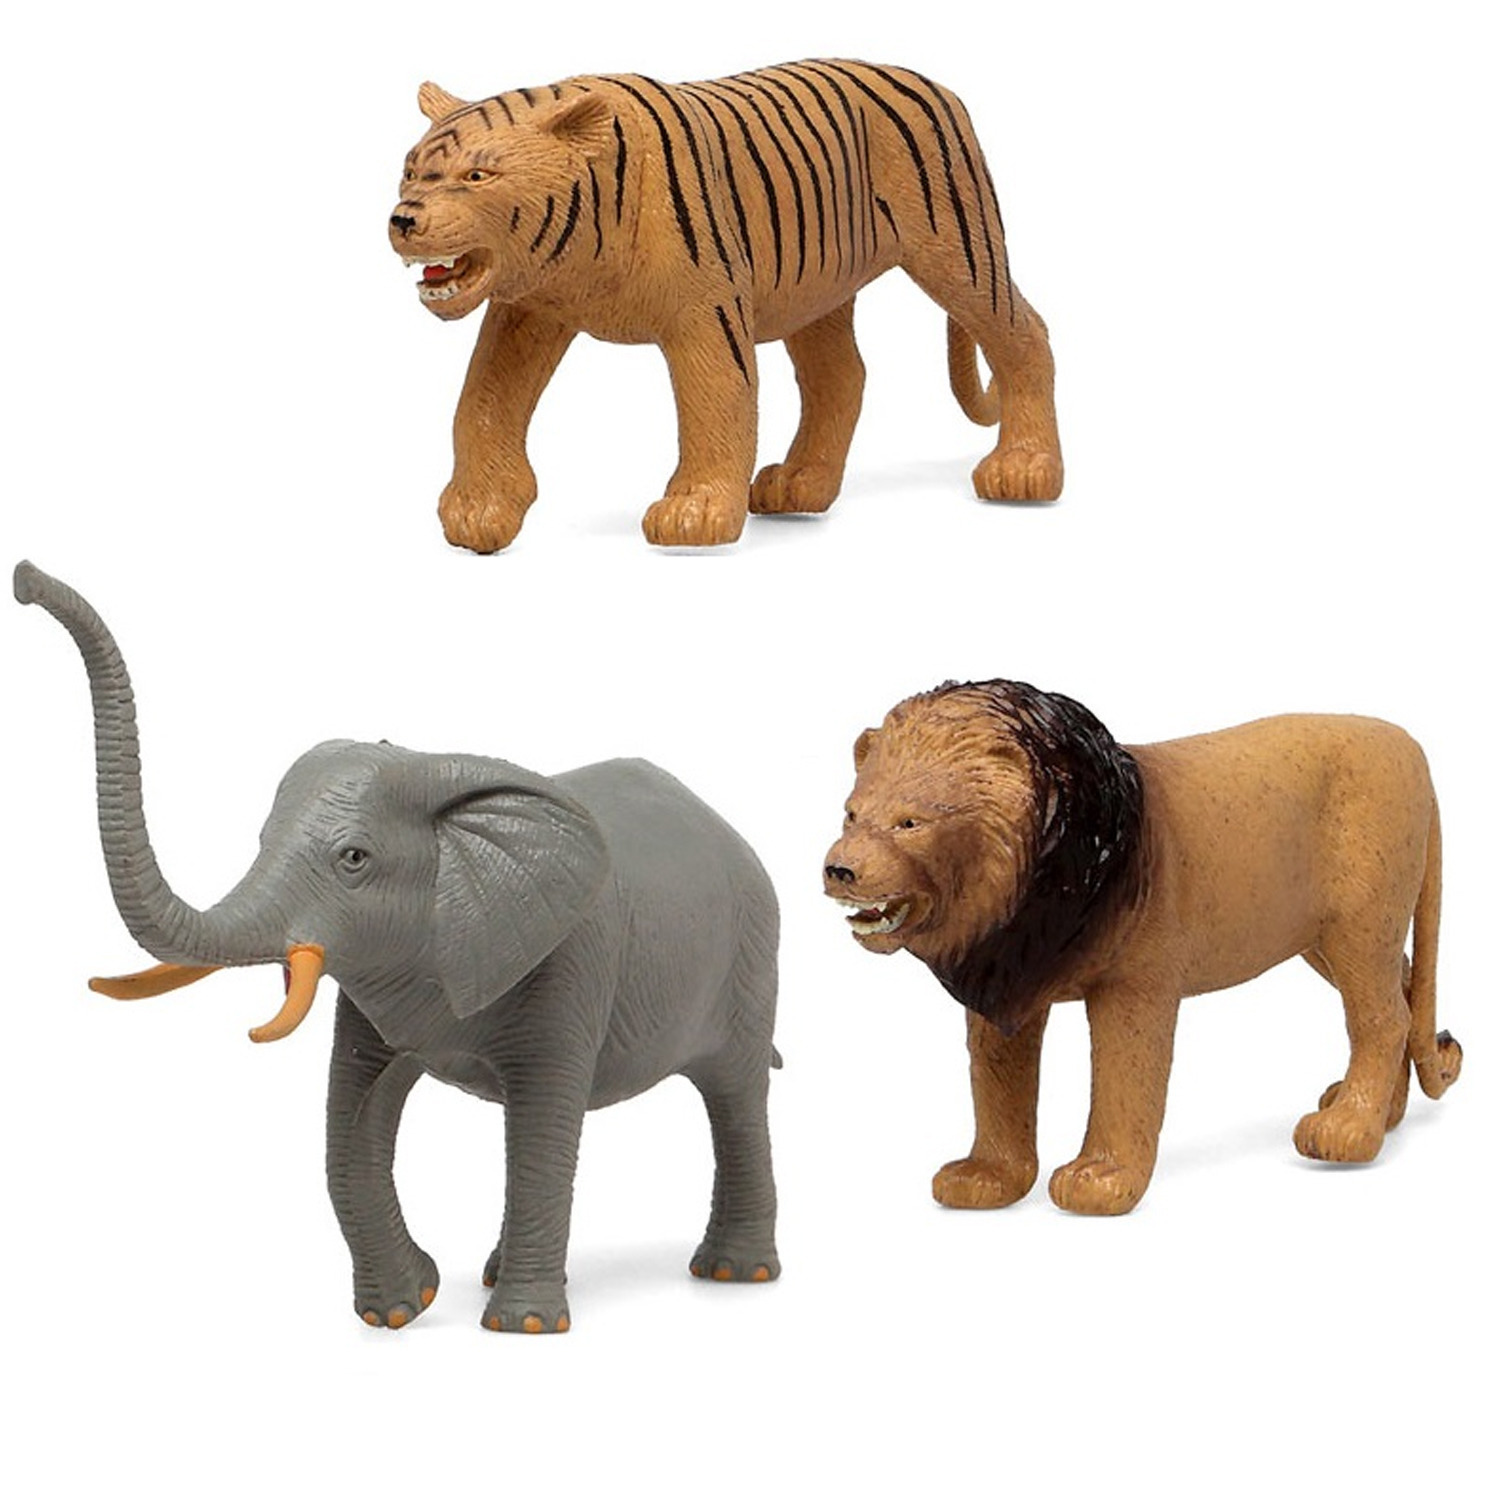 Afbeelding 3x Plastic safaridieren speelgoed figuren voor kinderen door Animals Giftshop